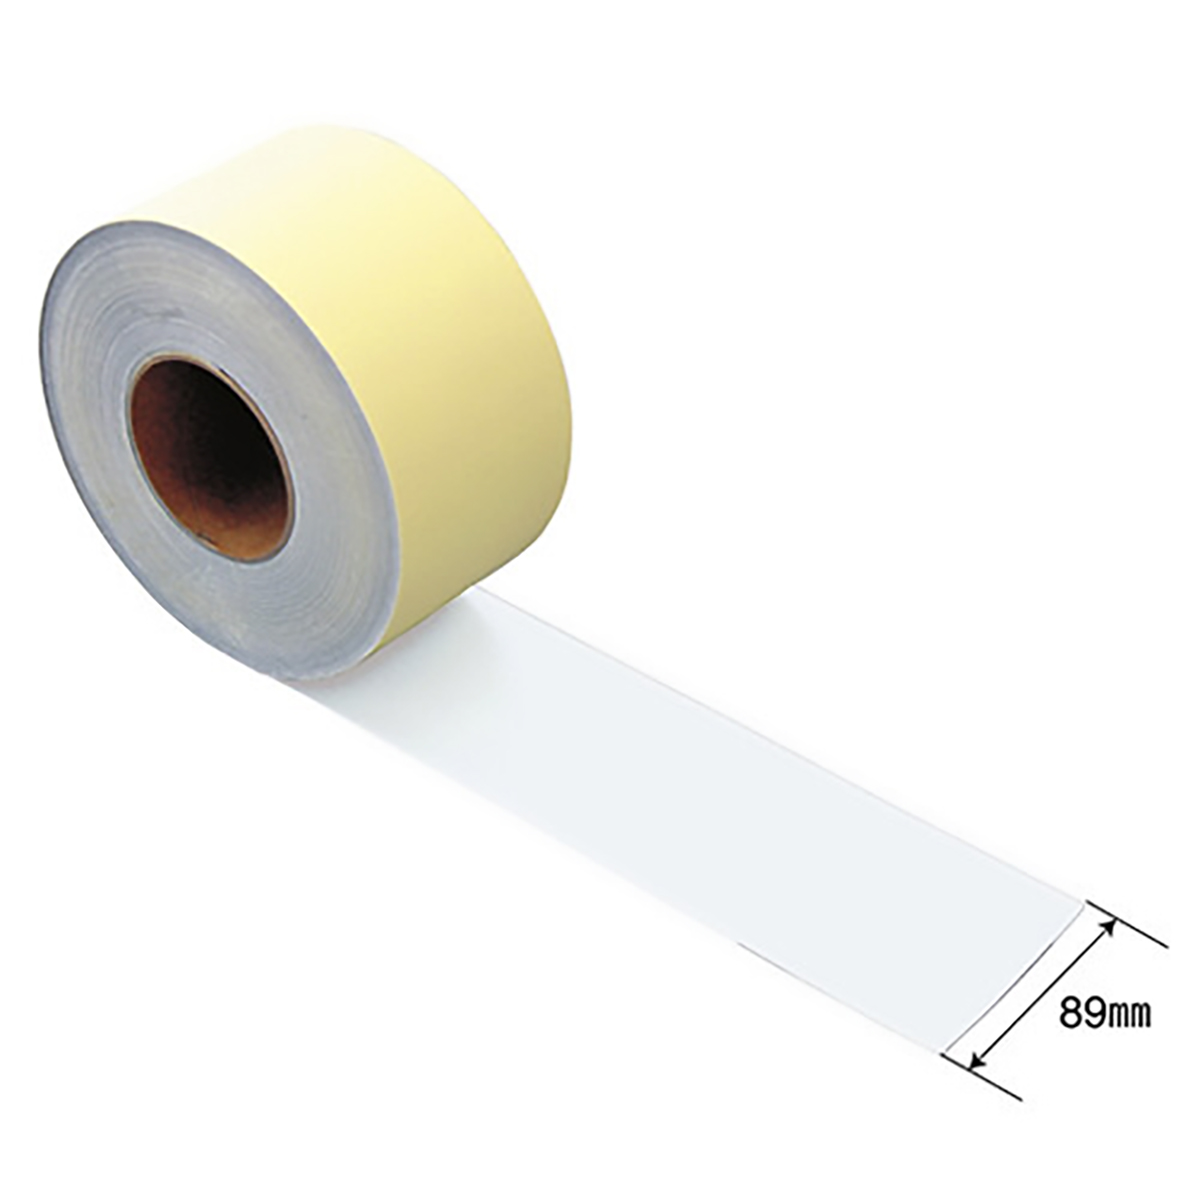 公式】パーマンショップ-補修テープ 24m 白色: 整備工具・補修用品